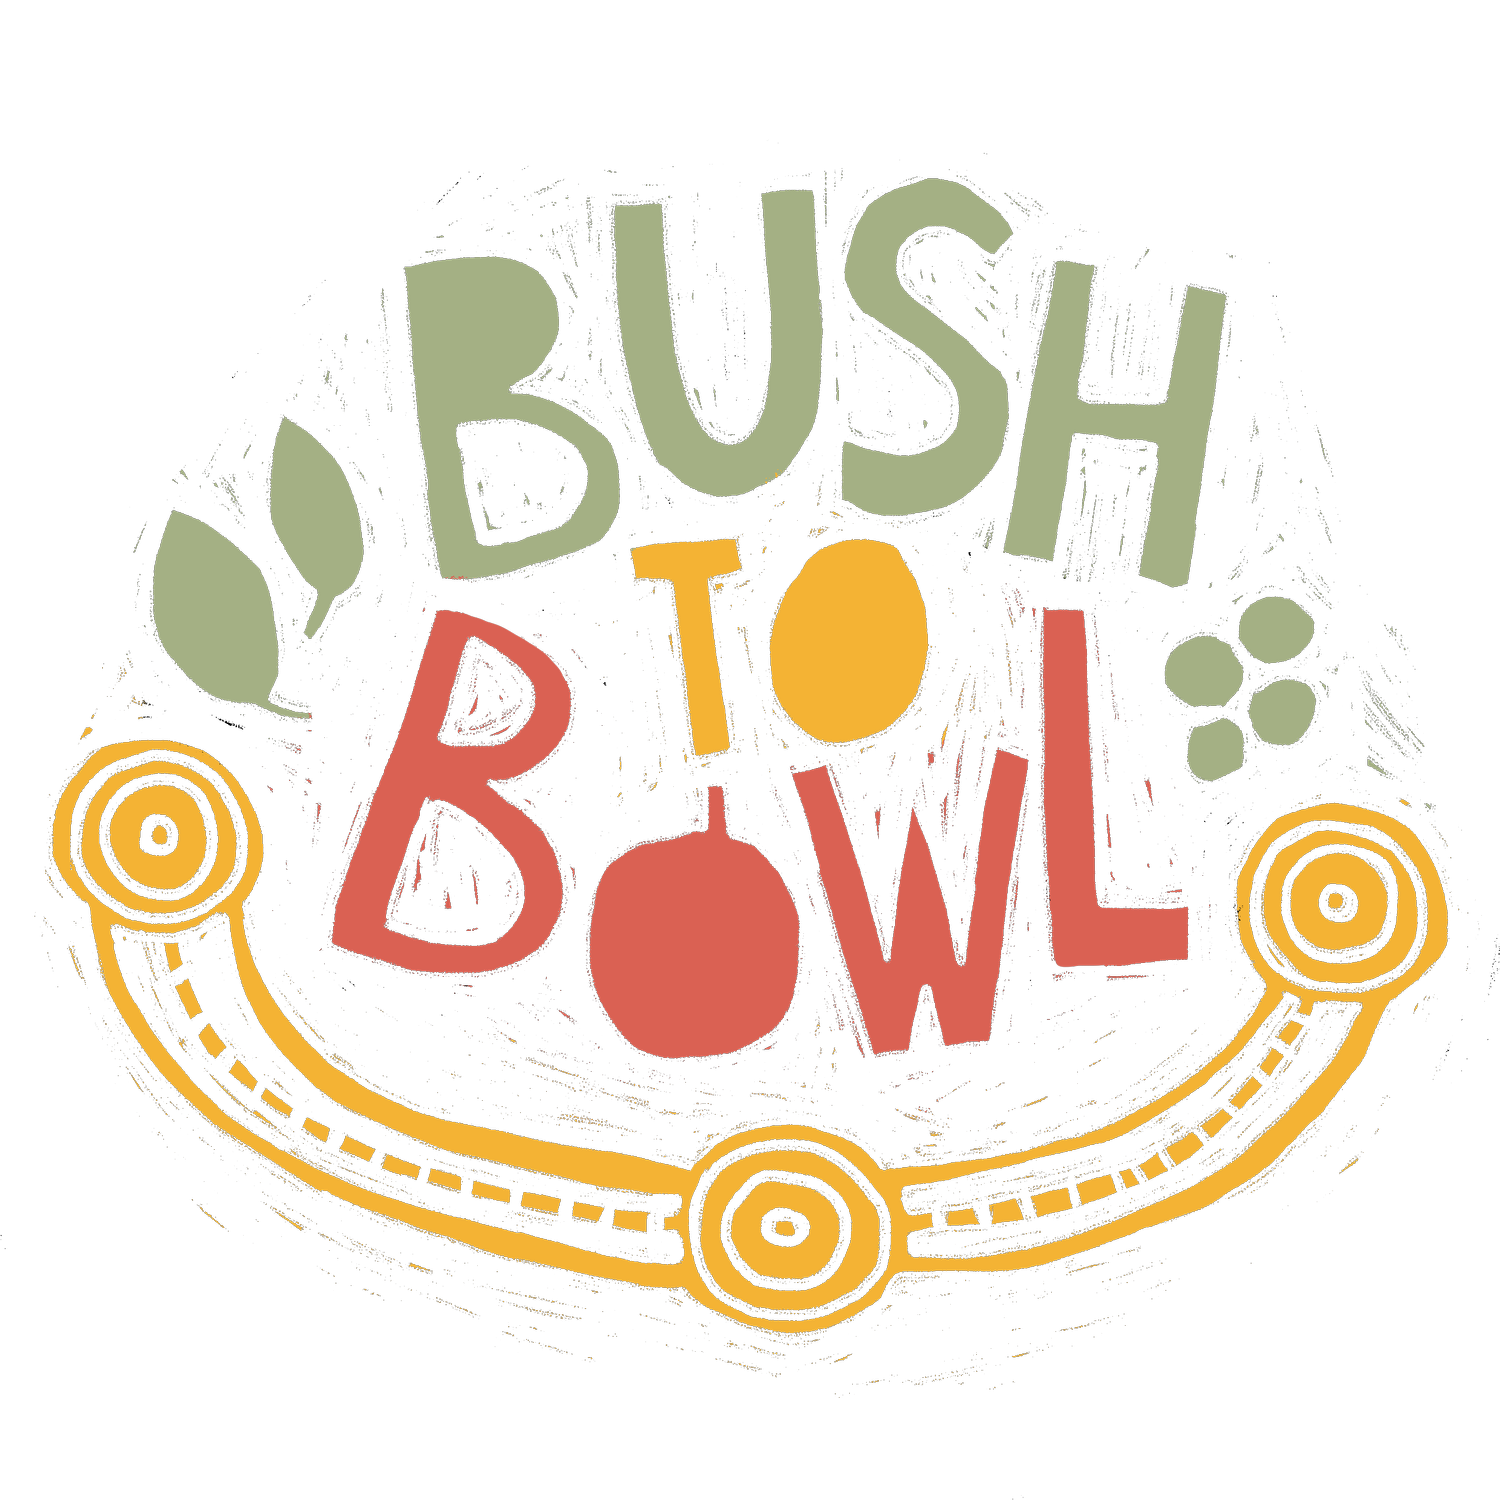 Bush To Bowl